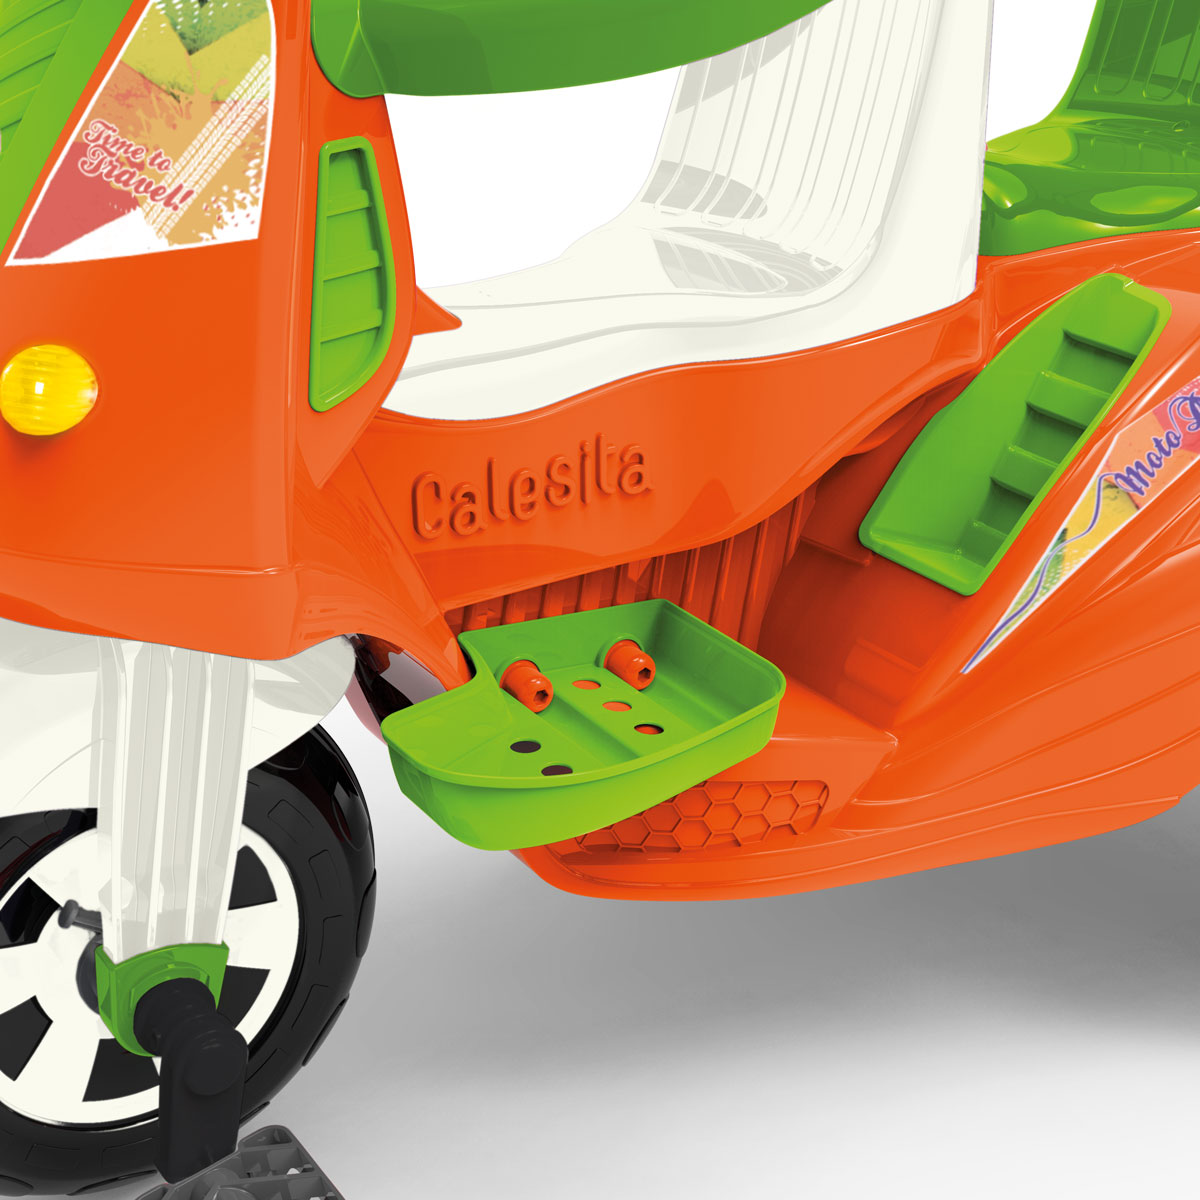 Triciclo Infantil Calesita Moto Duo- 2 em 1 - Pedal e Passeio com Aro -  Unissex L